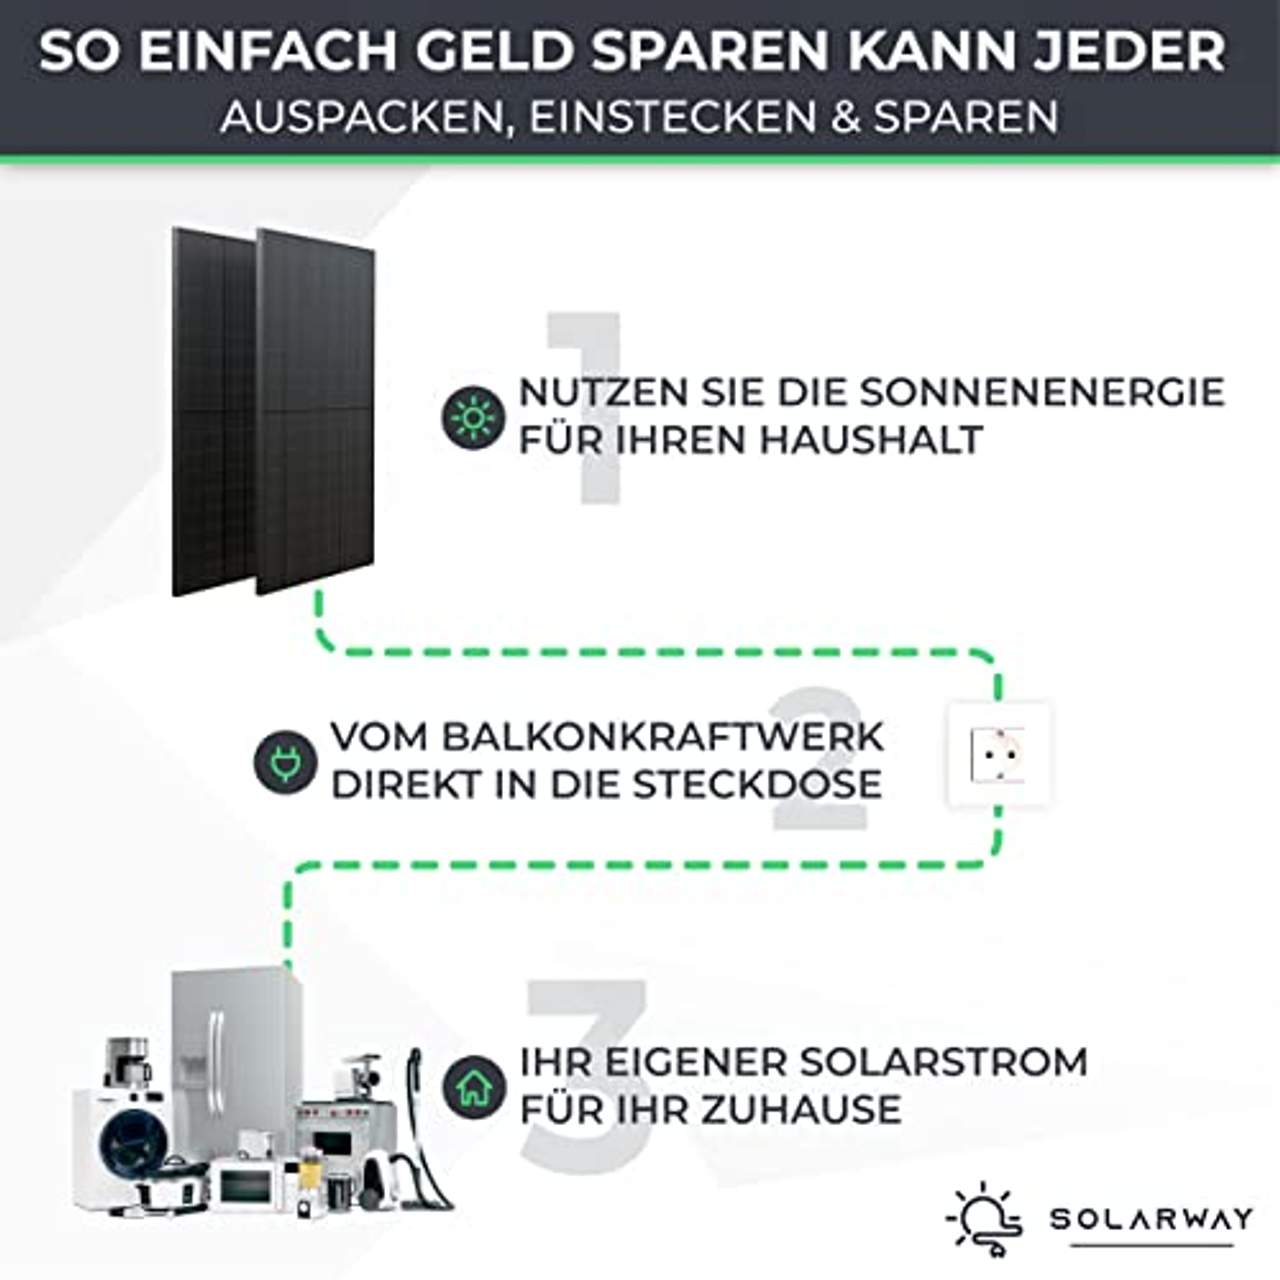 Solarway Balkonkraftwerk 800W Komplett Steckdose Flachdach Halterung